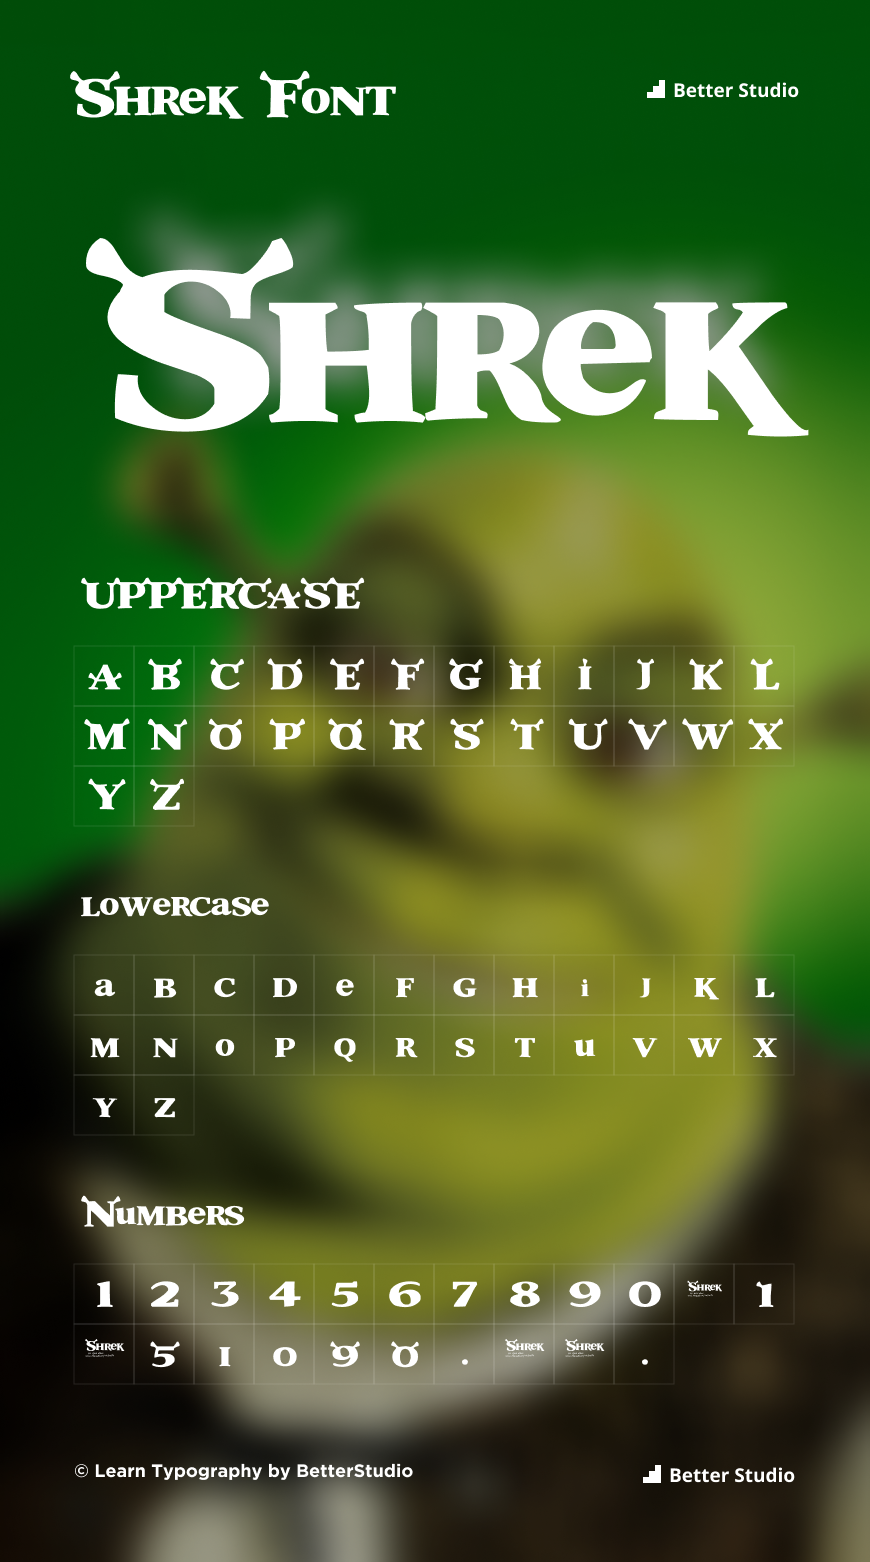 shrek text art copy and paste